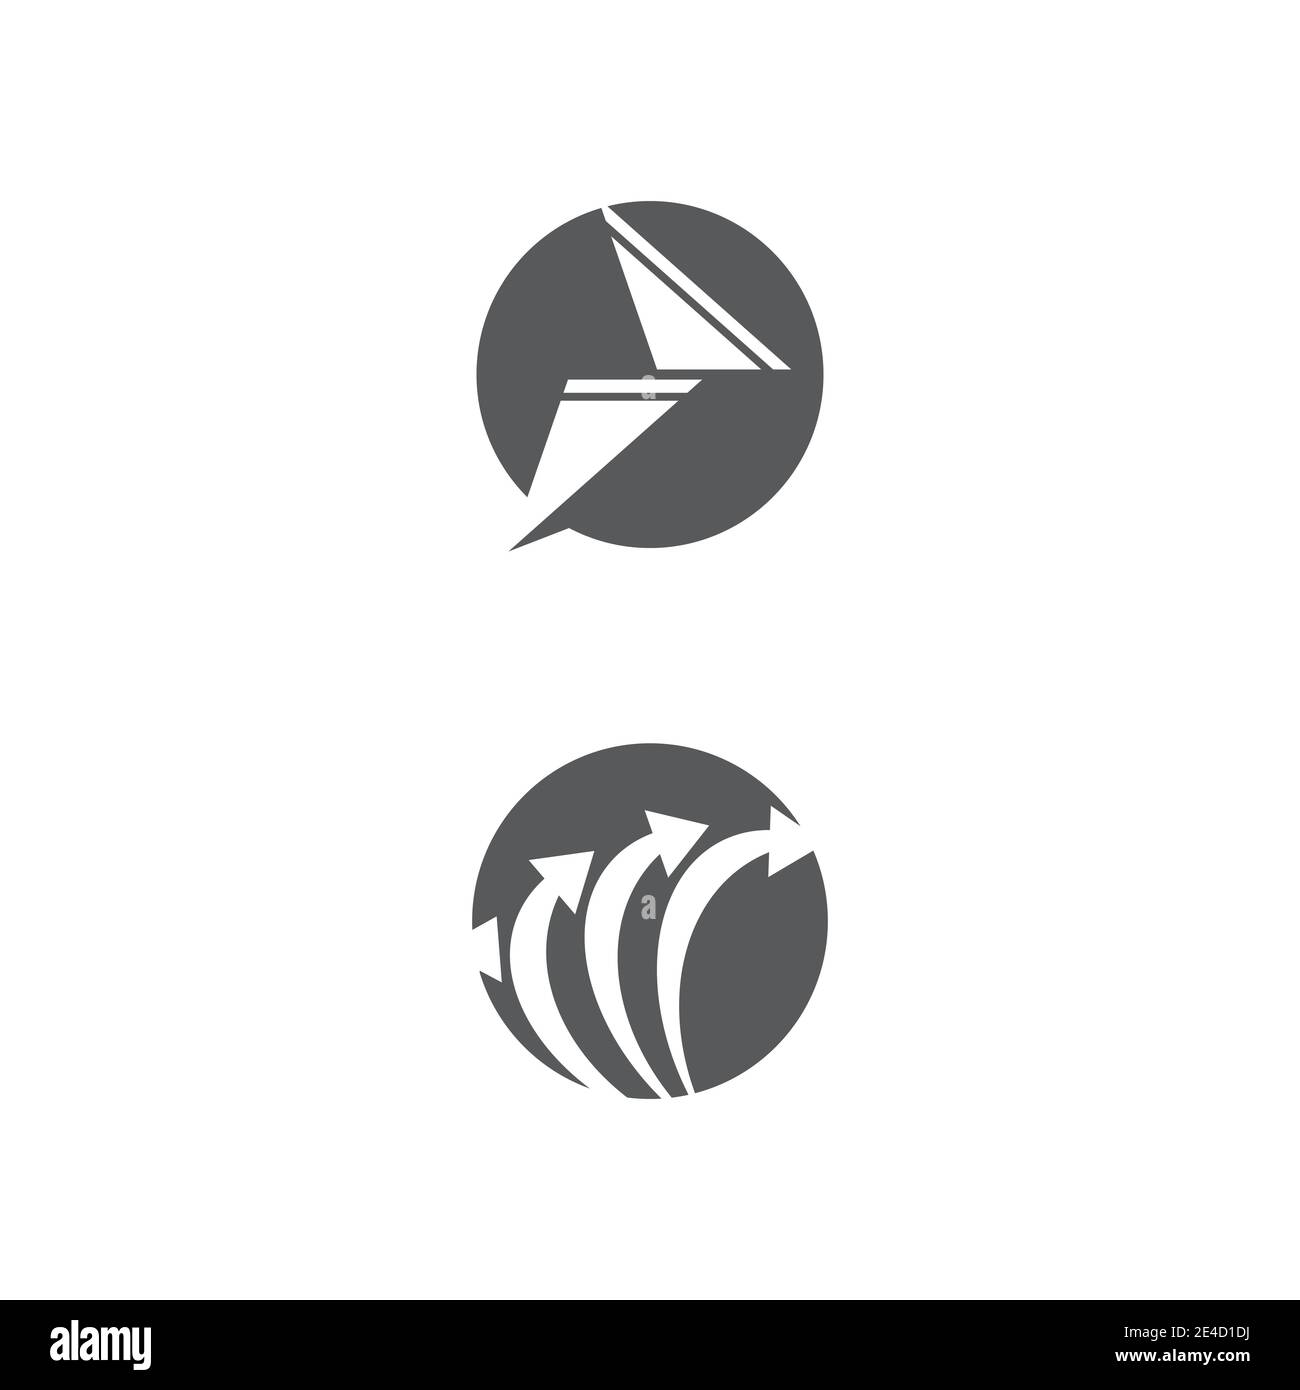 Arrow vector illustration icon Logo Template design Stock Vector